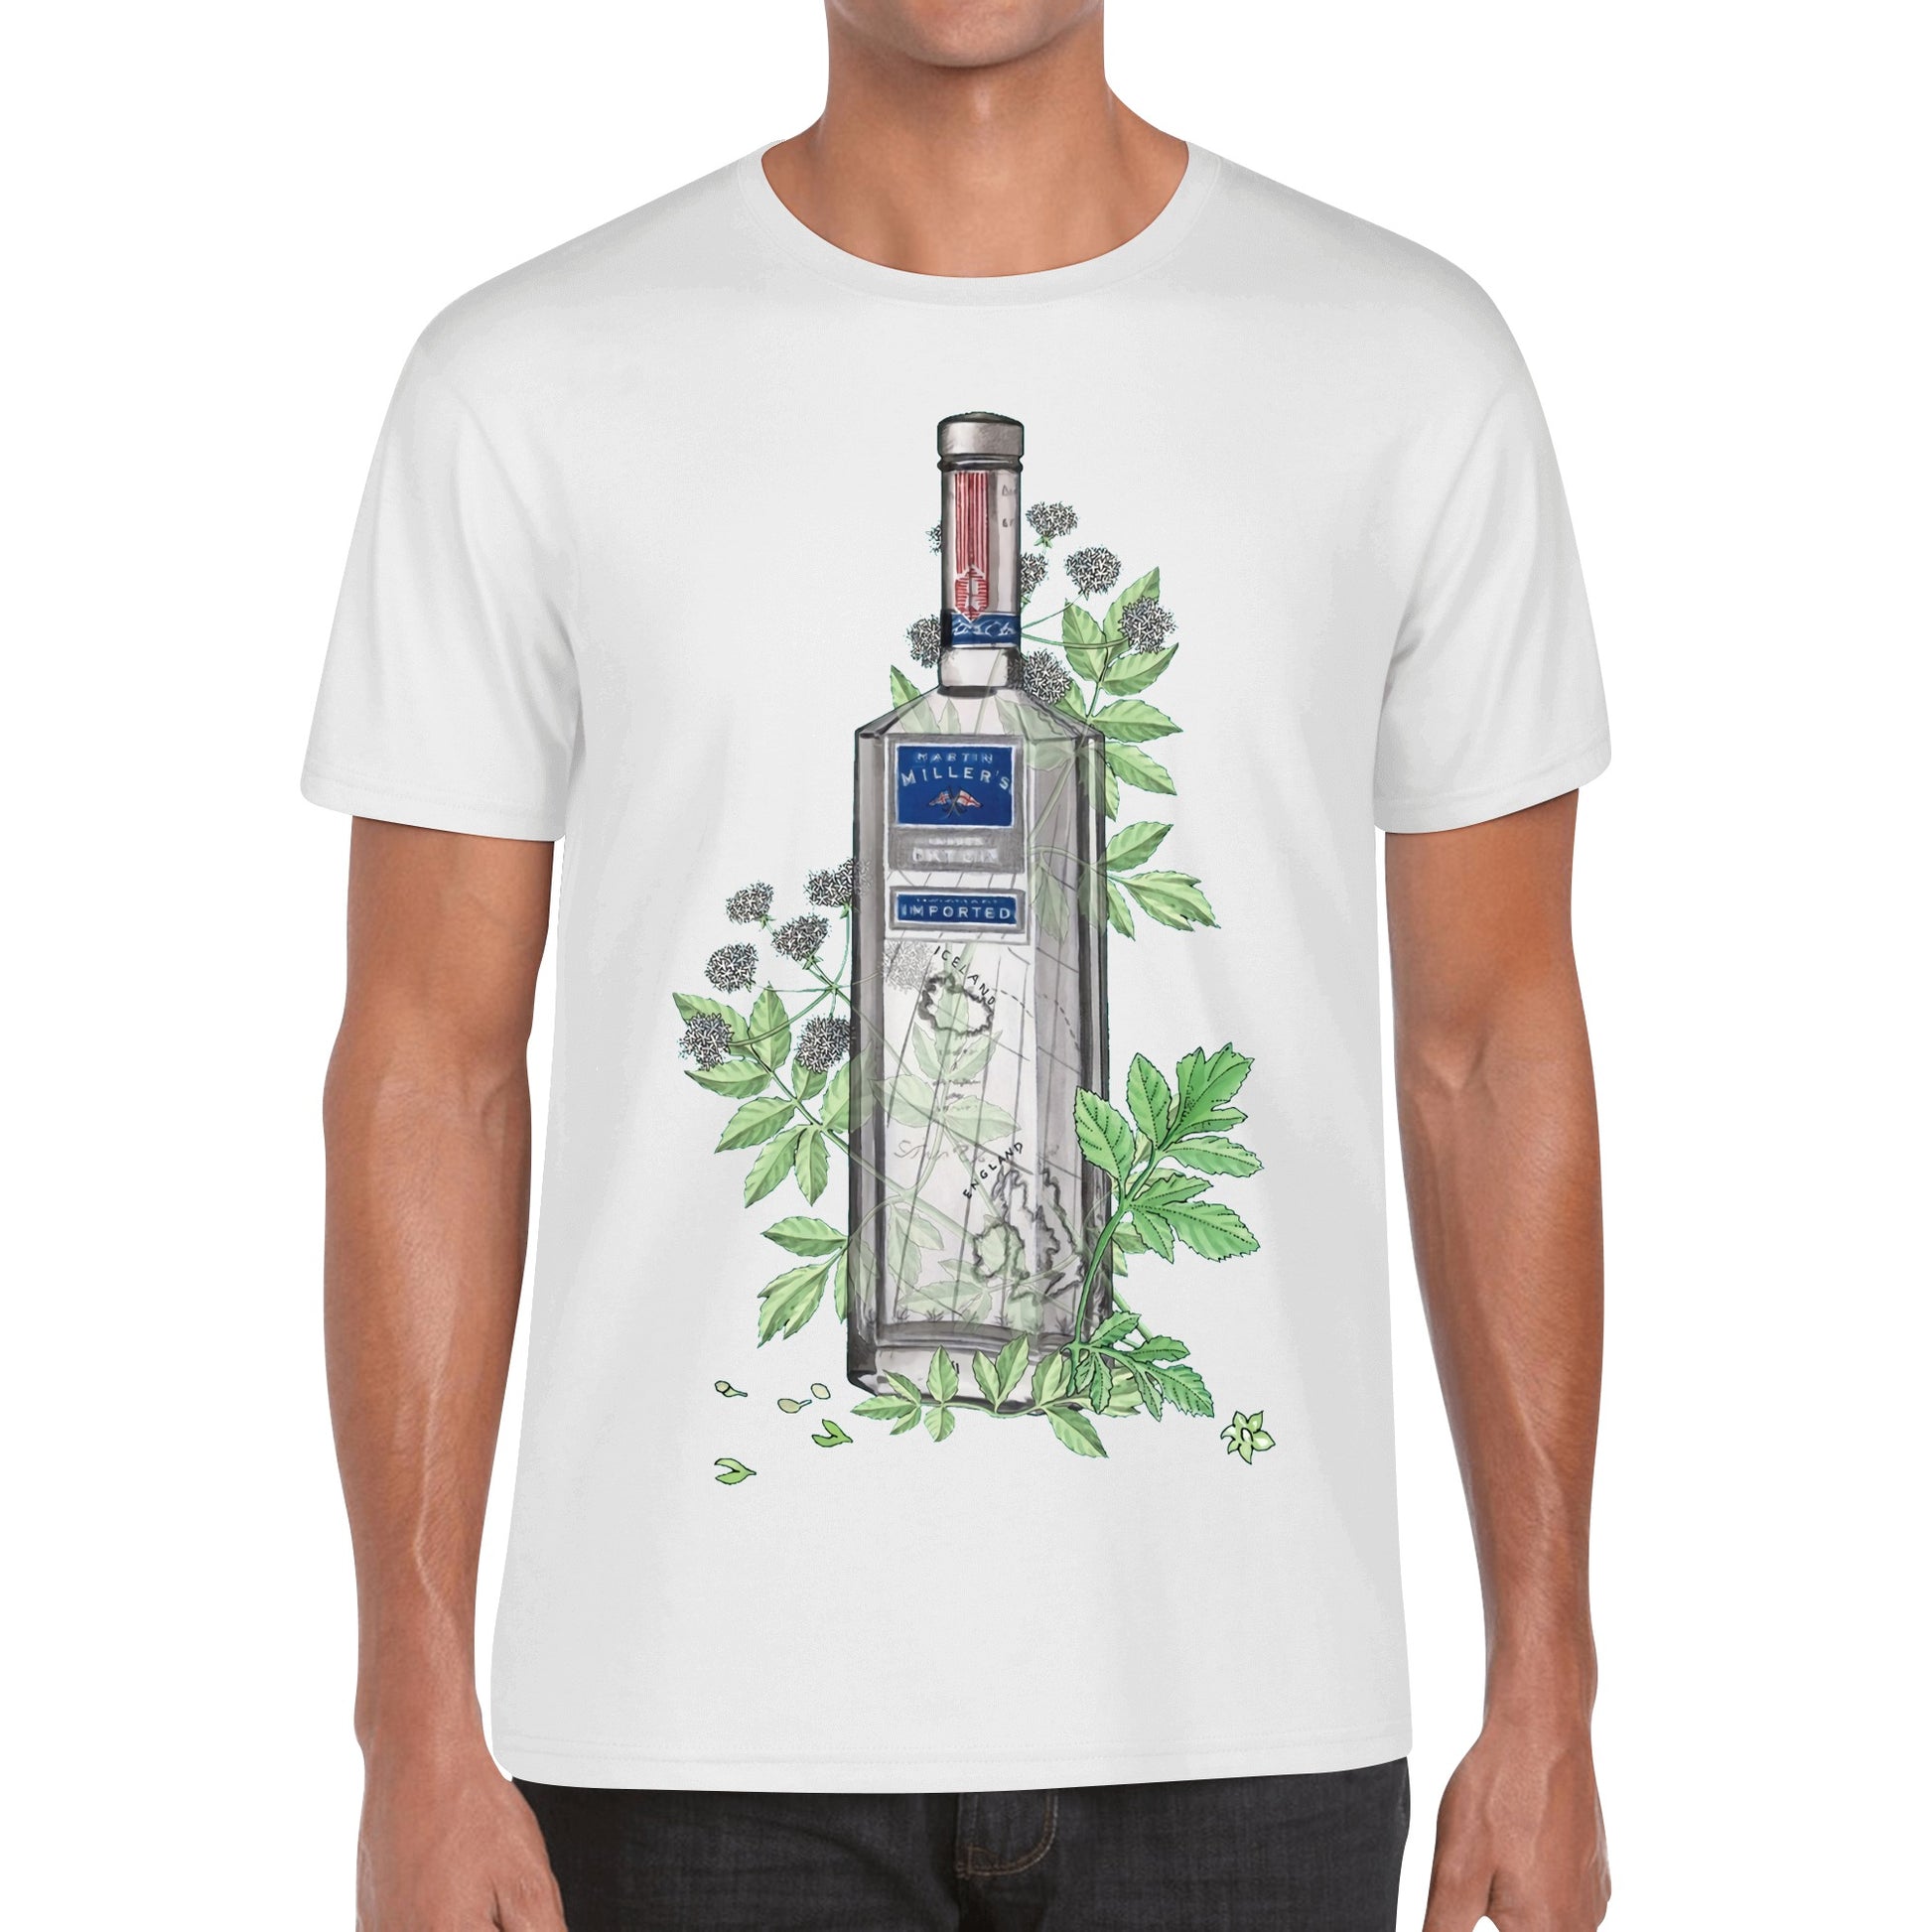 T-Shirt Gin Martin Millers floral art DrinkandArt